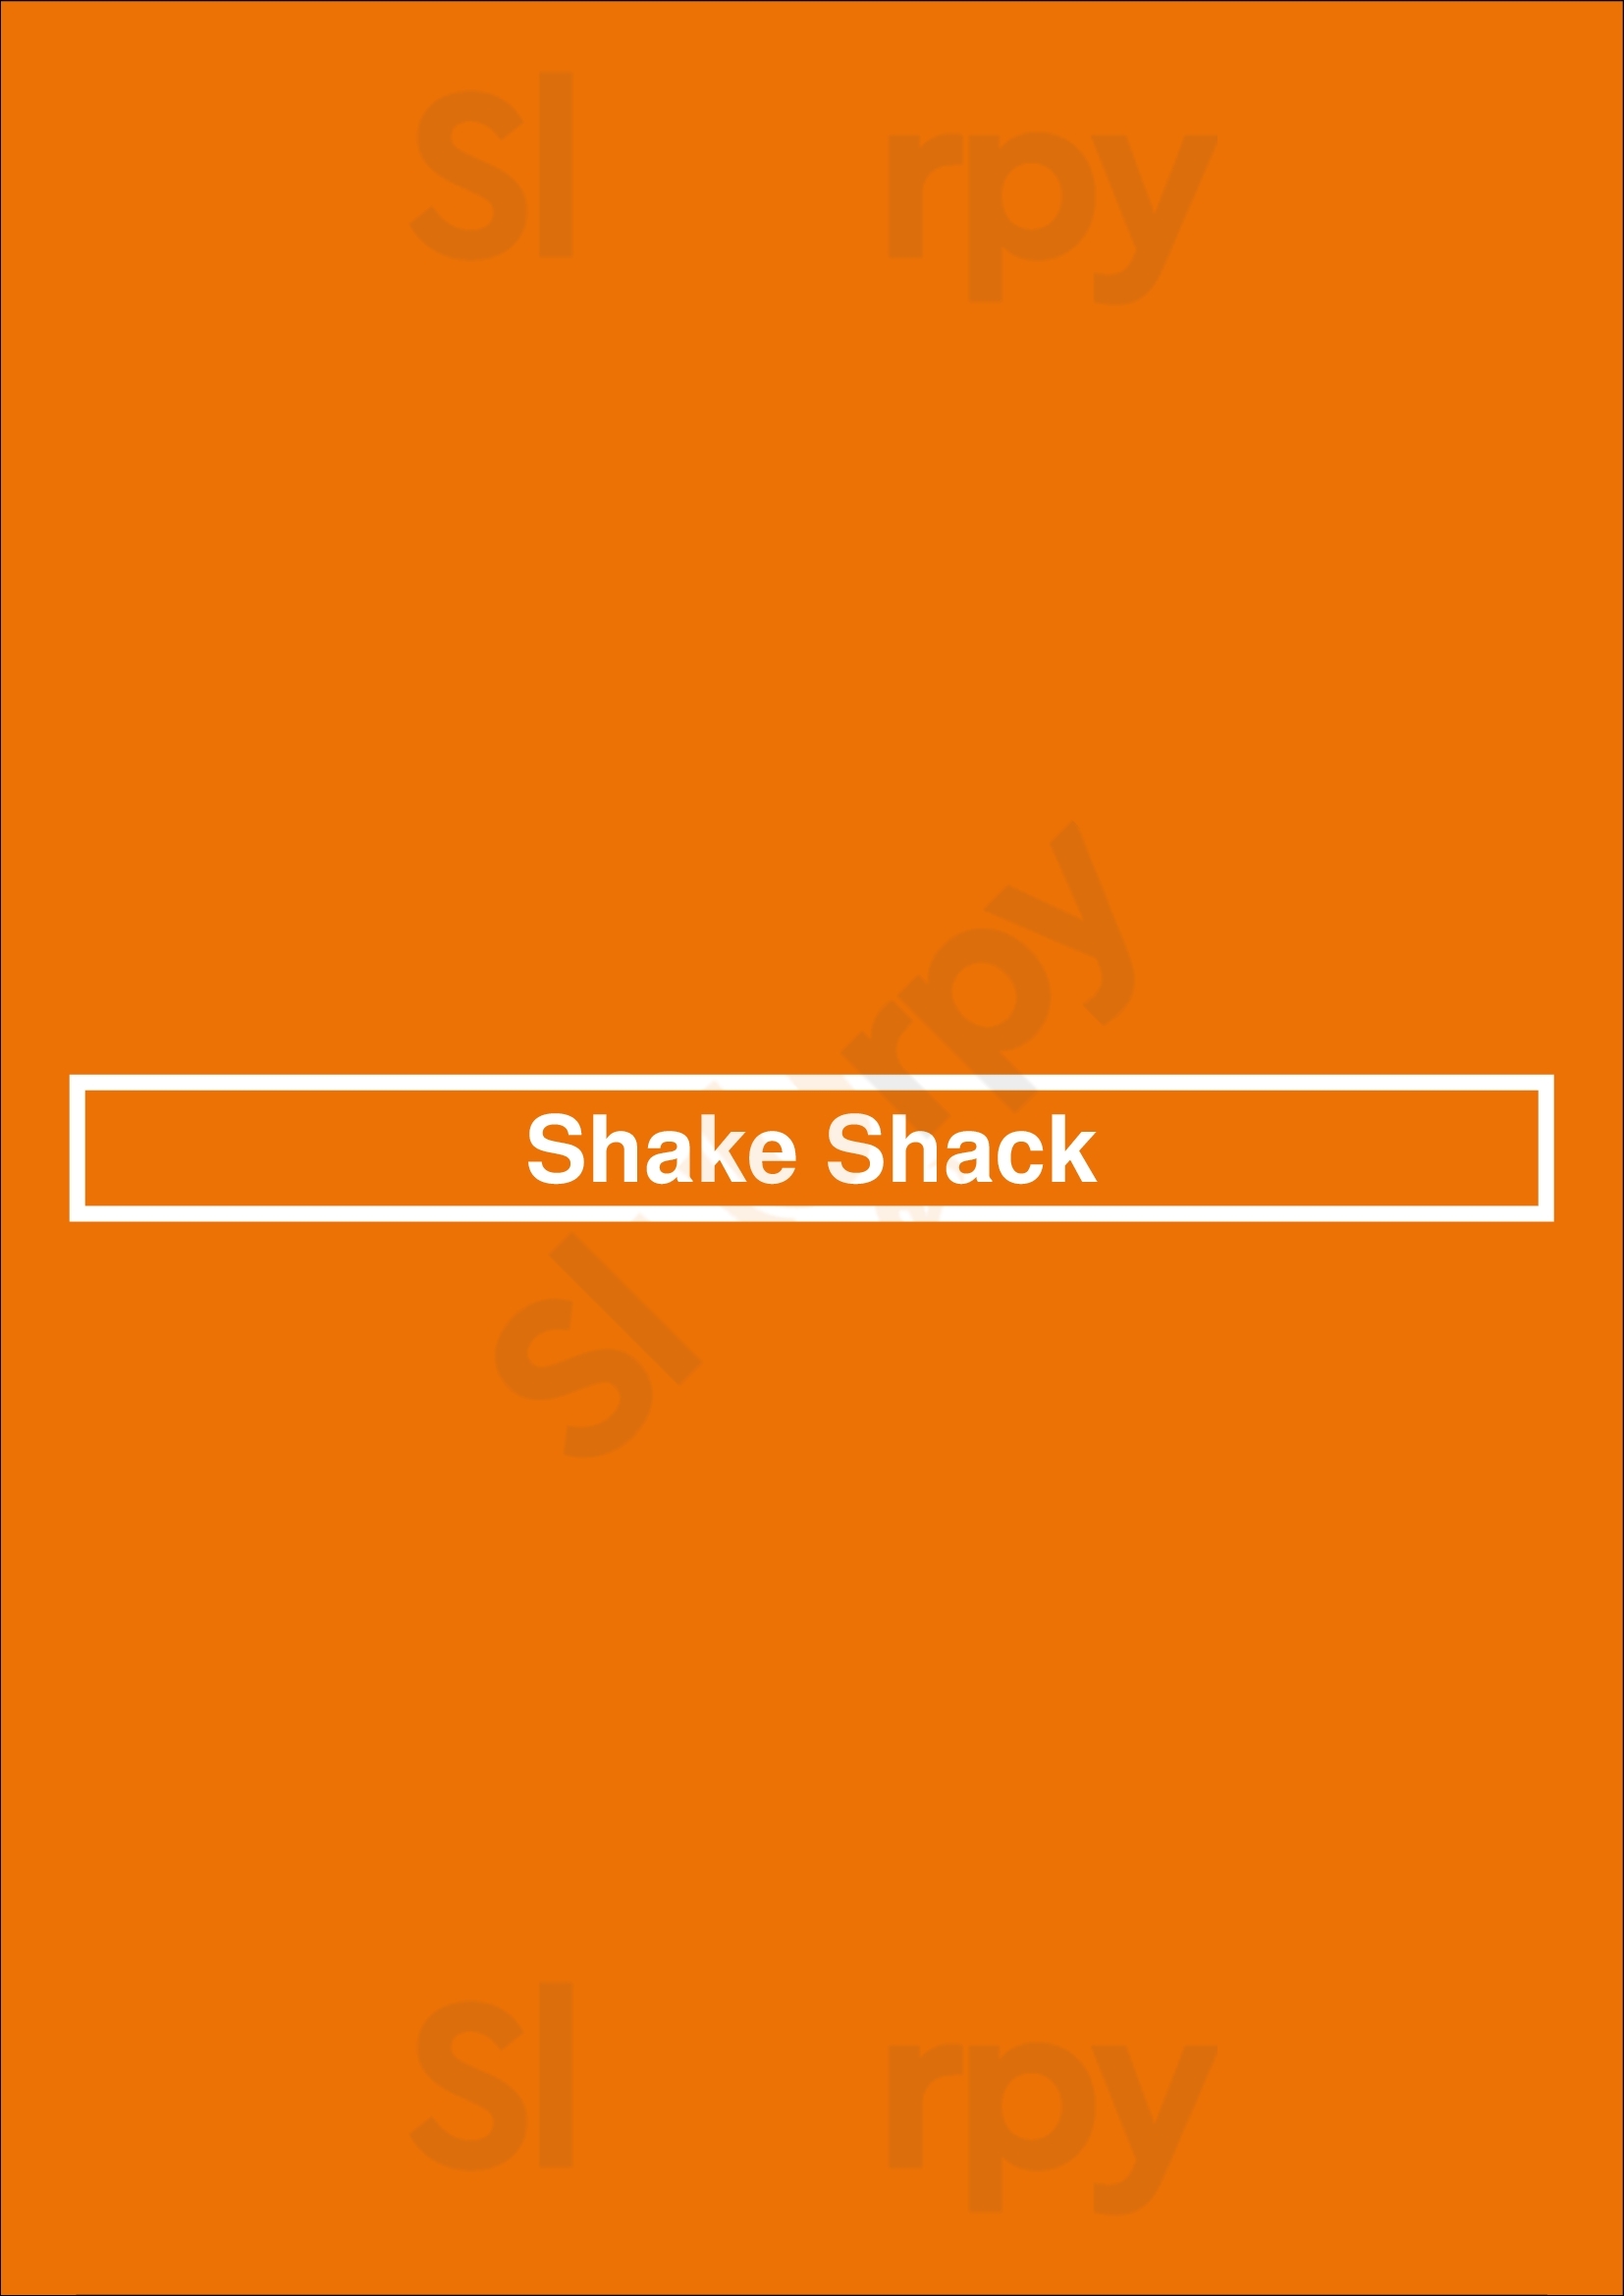 Shake Shack Buckhead Atlanta Menu - 1